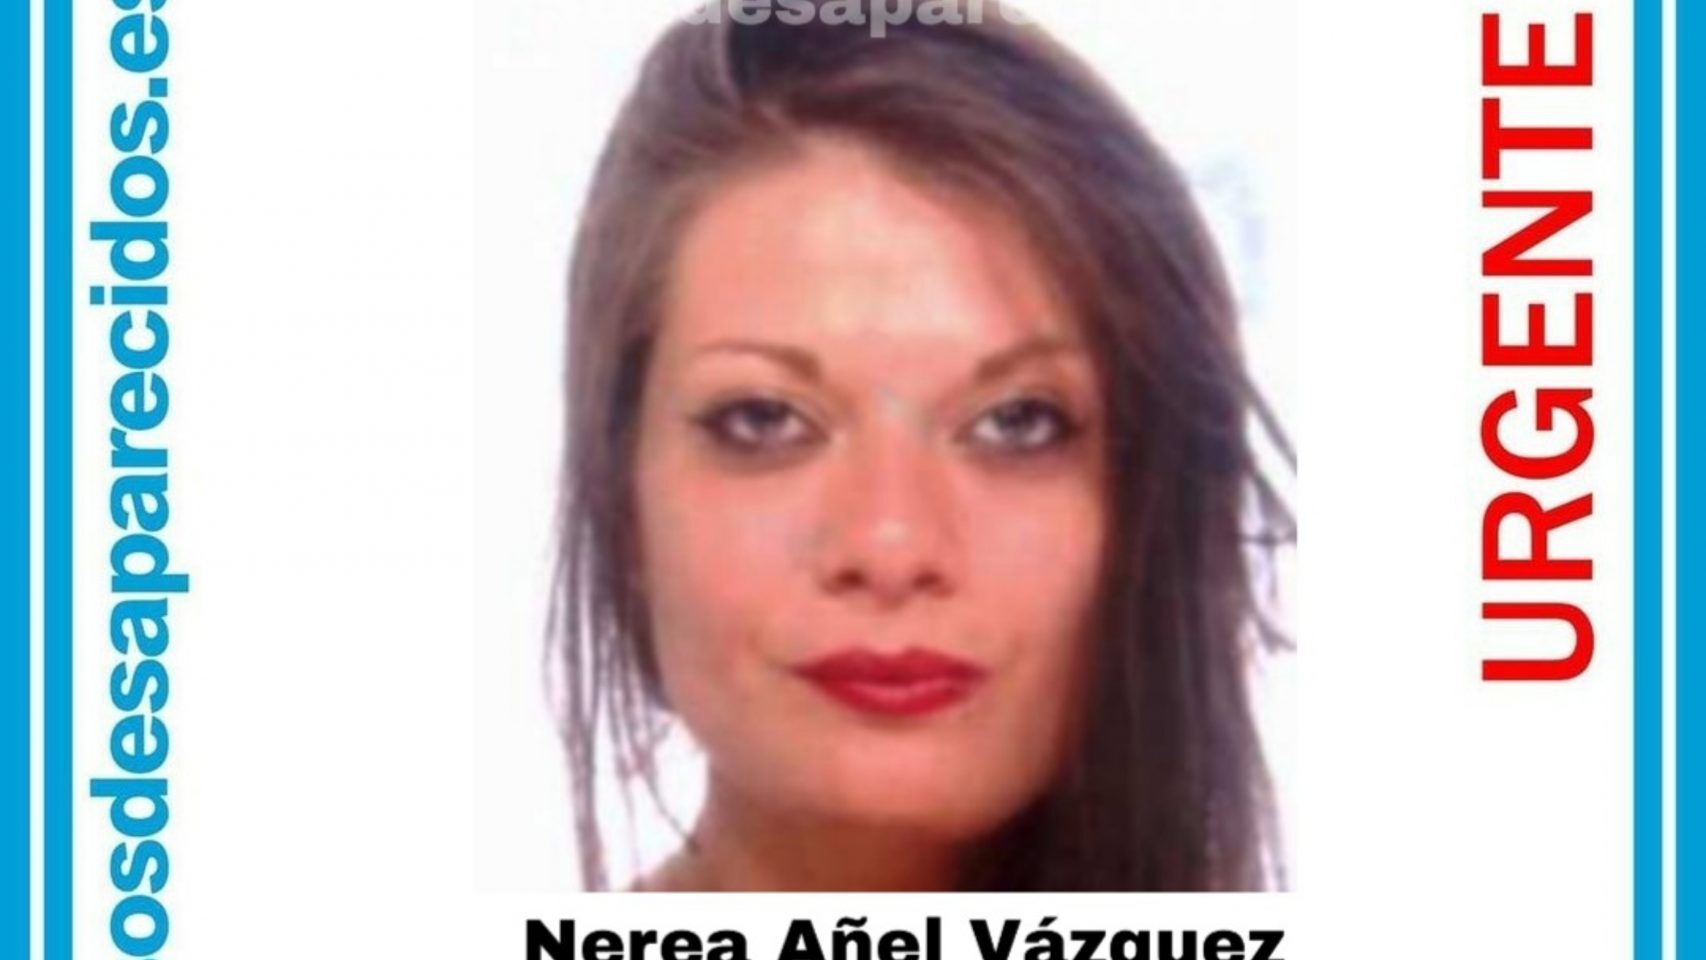 La joven encontrada muerta en Ourense este domingo podría ser Nerea Añel, desaparecida a principios de año